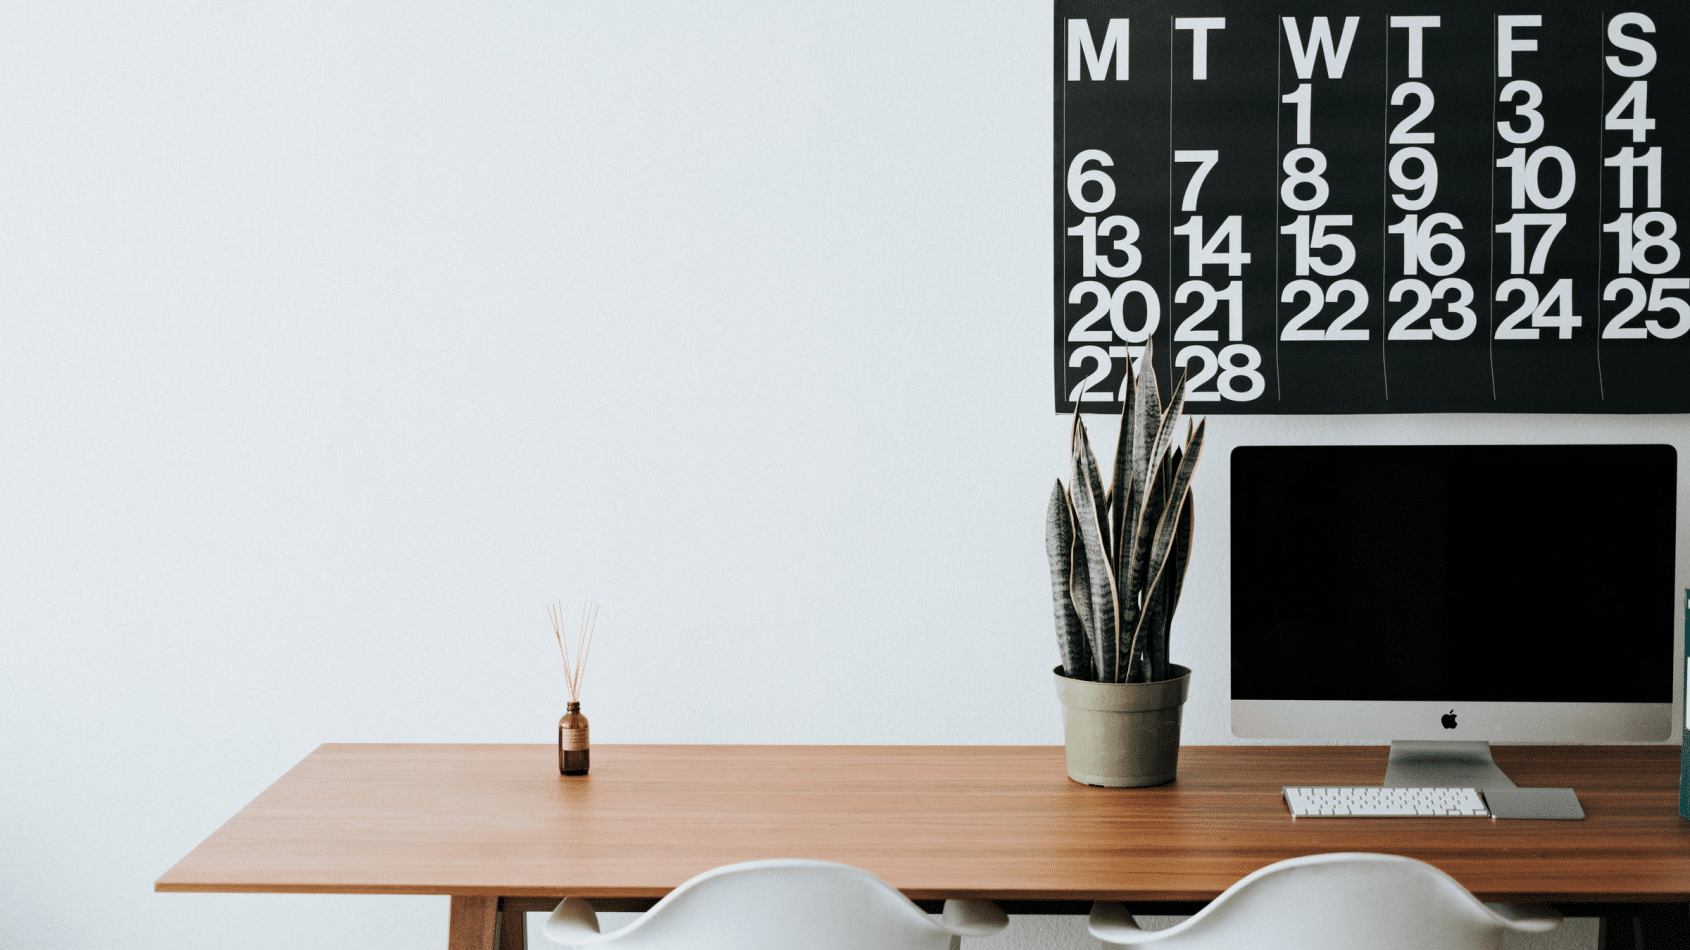 Das Bild zeigt einen zwei weiße Stühle vor einem braunen Schreibtisch auf dem eine Pflanze sowie ein ausgeschalteter Monitor steht. Dahinter ist ein Kalender an der Wand zu sehen.